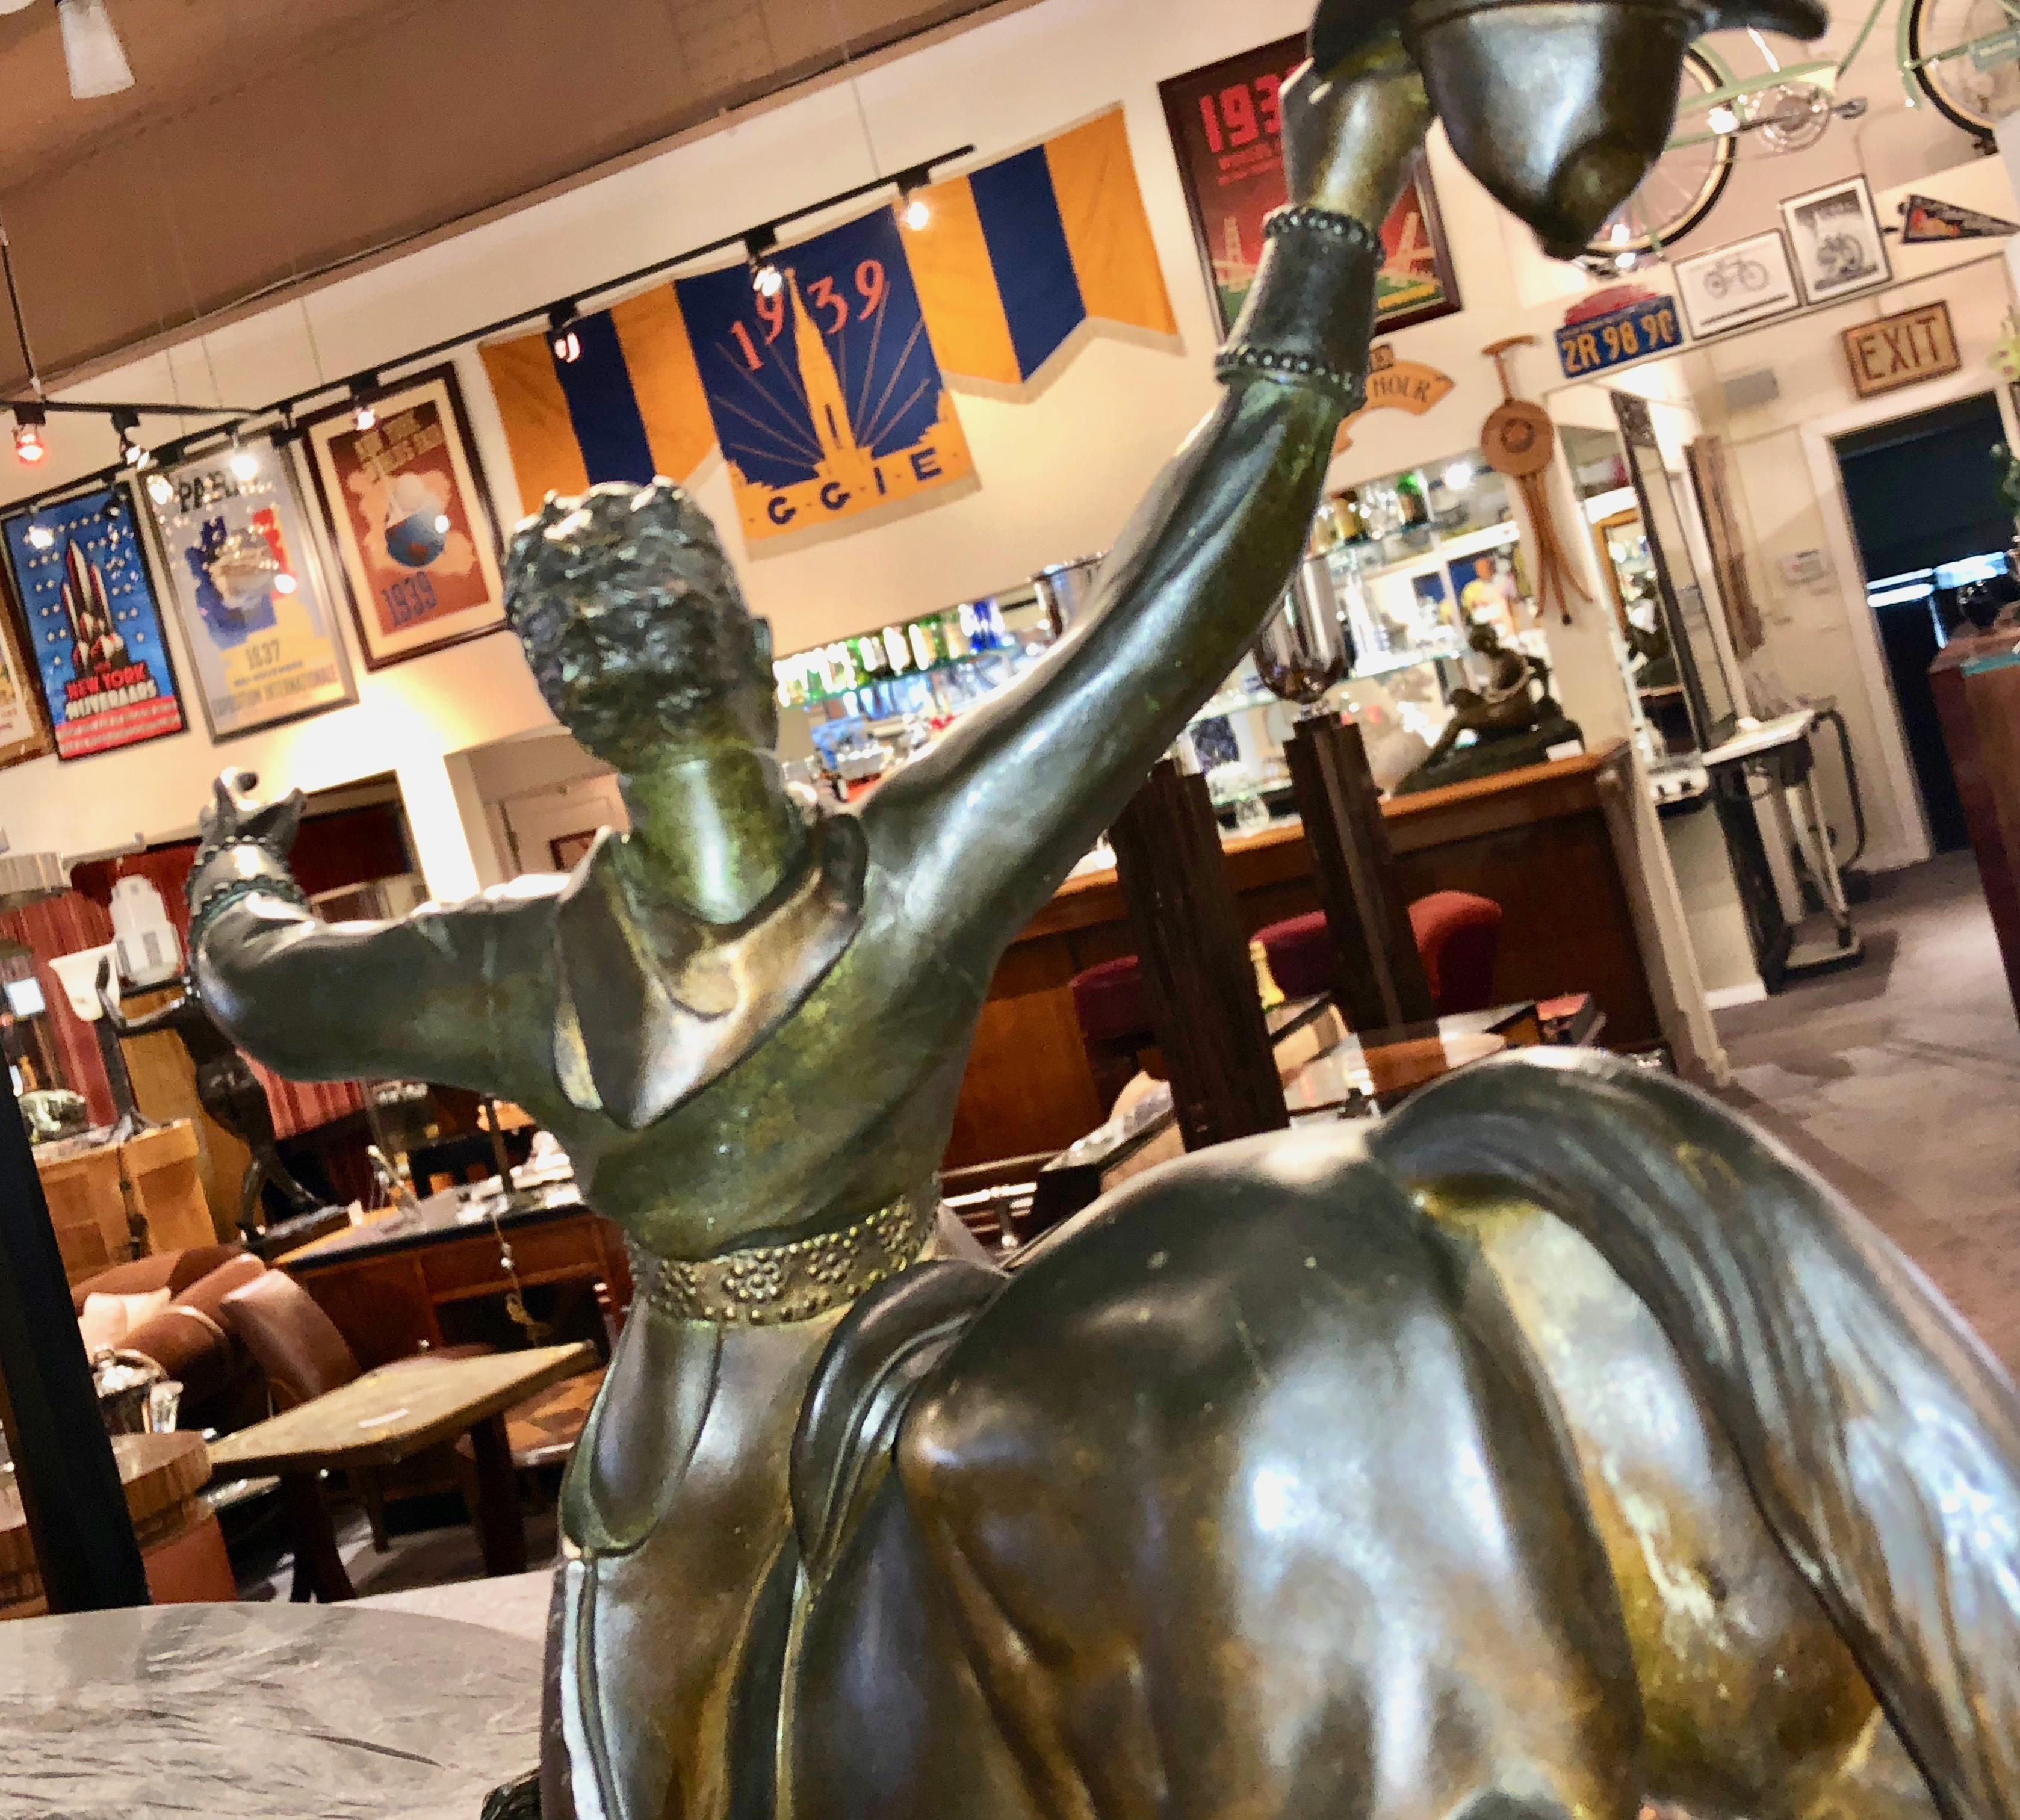 Bronze Maurice Guiraud Rivière & Etling Paris Cowboy at the Rodeo Art Deco Statue For Sale